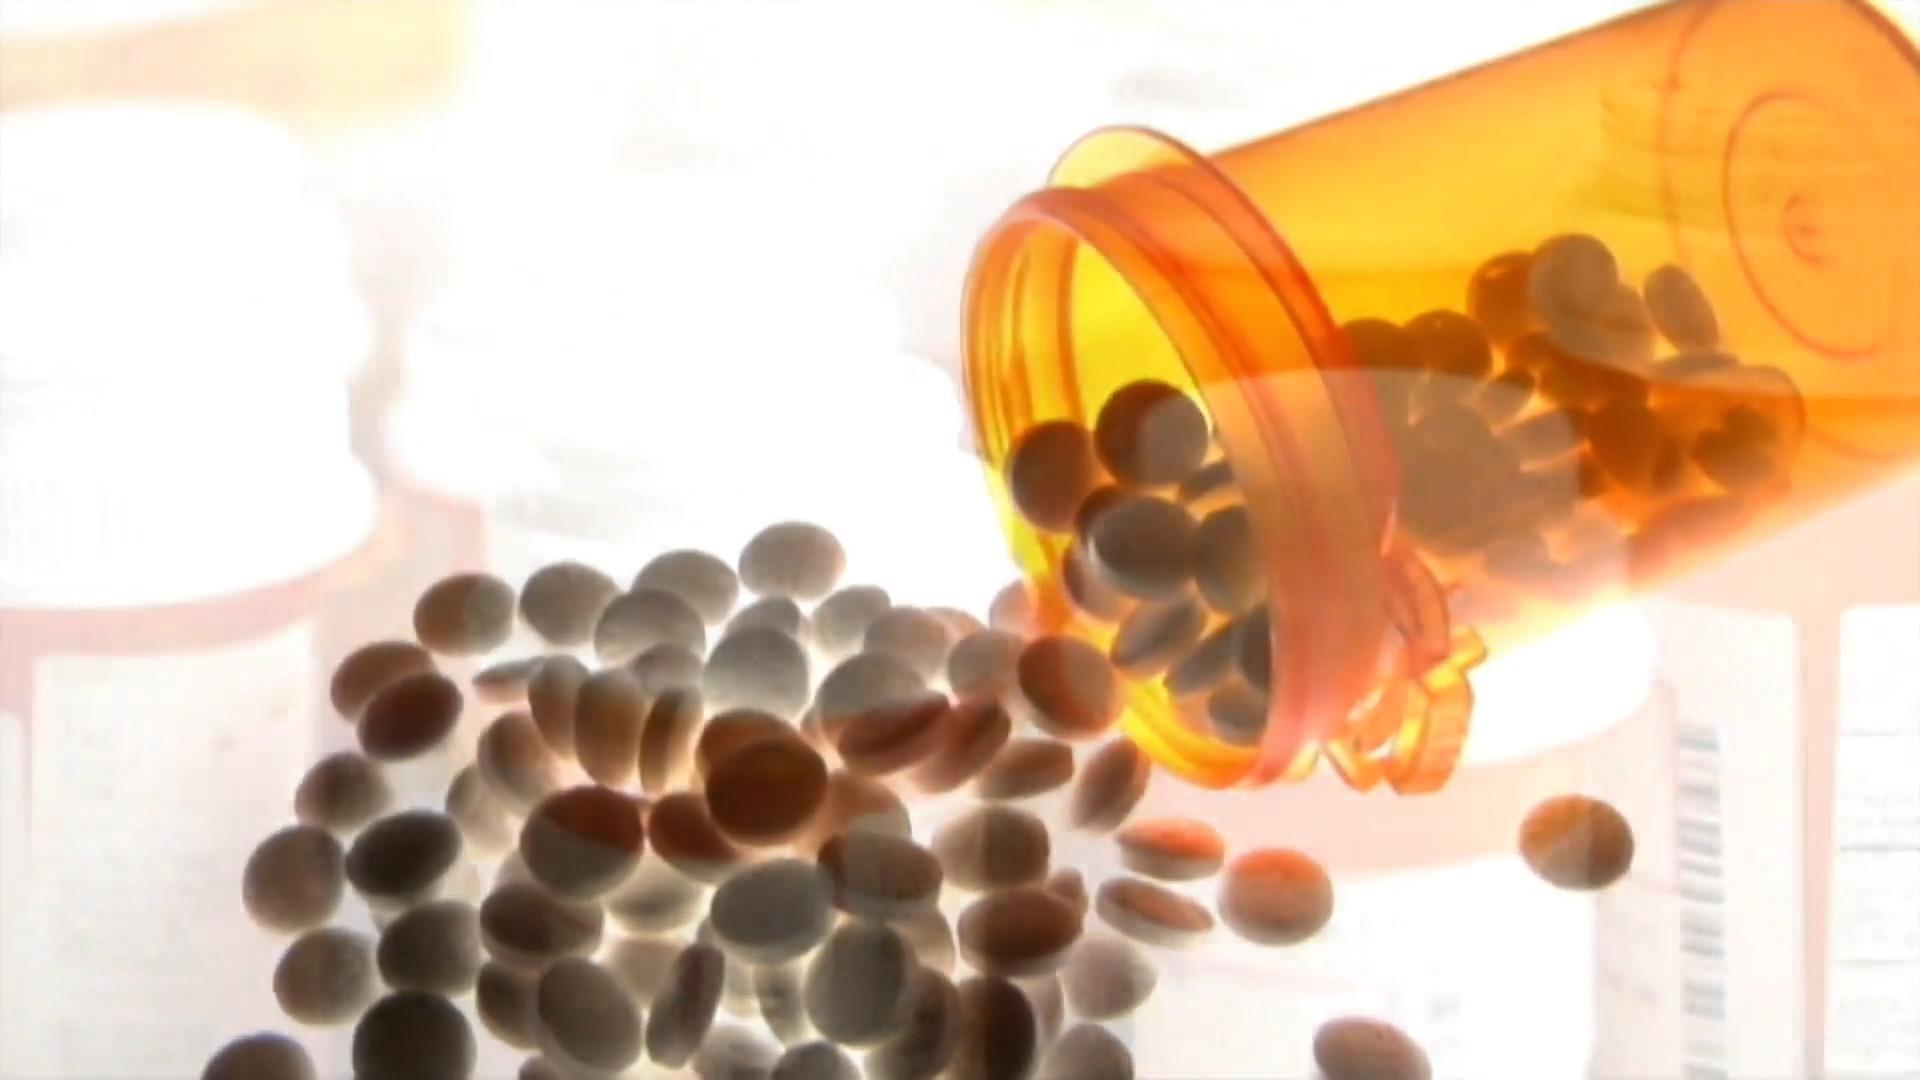 Drogenskandal der Pharmaindustrie in den USA Das Geschäft mit Opioiden